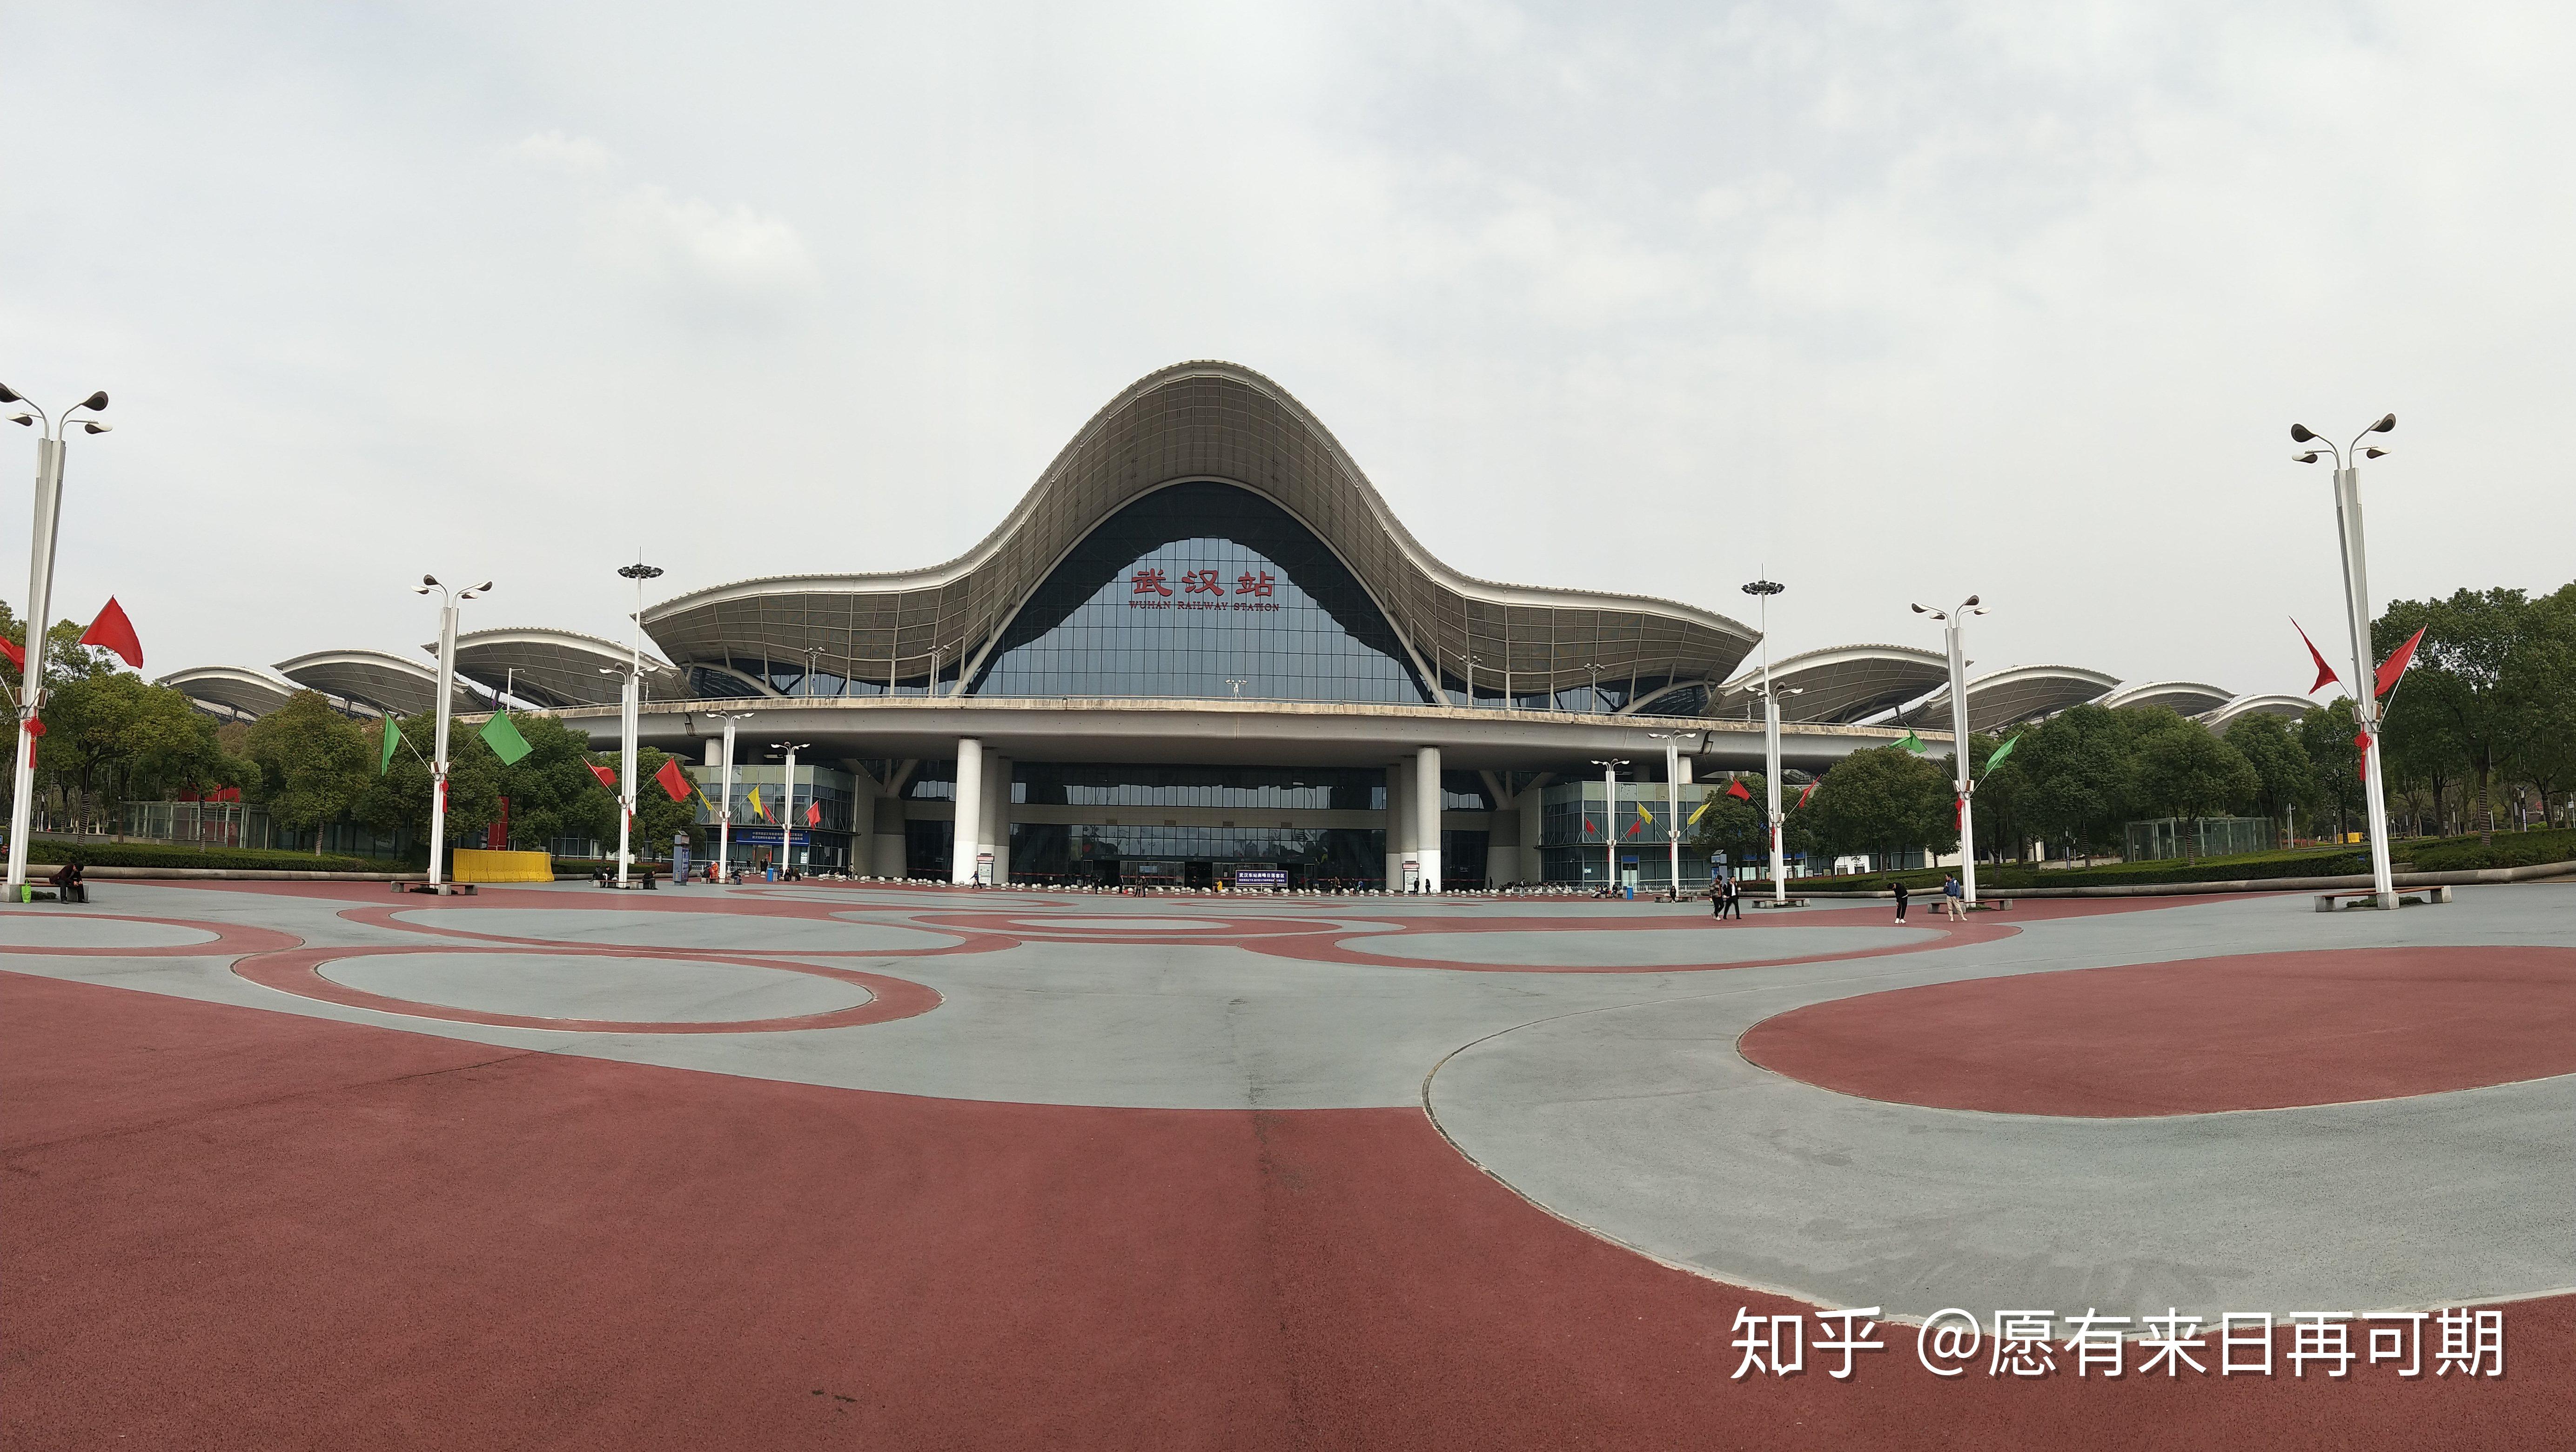 2019重庆轨道交通大数据发布 全年当日客流量最高达373.9万乘次_地铁